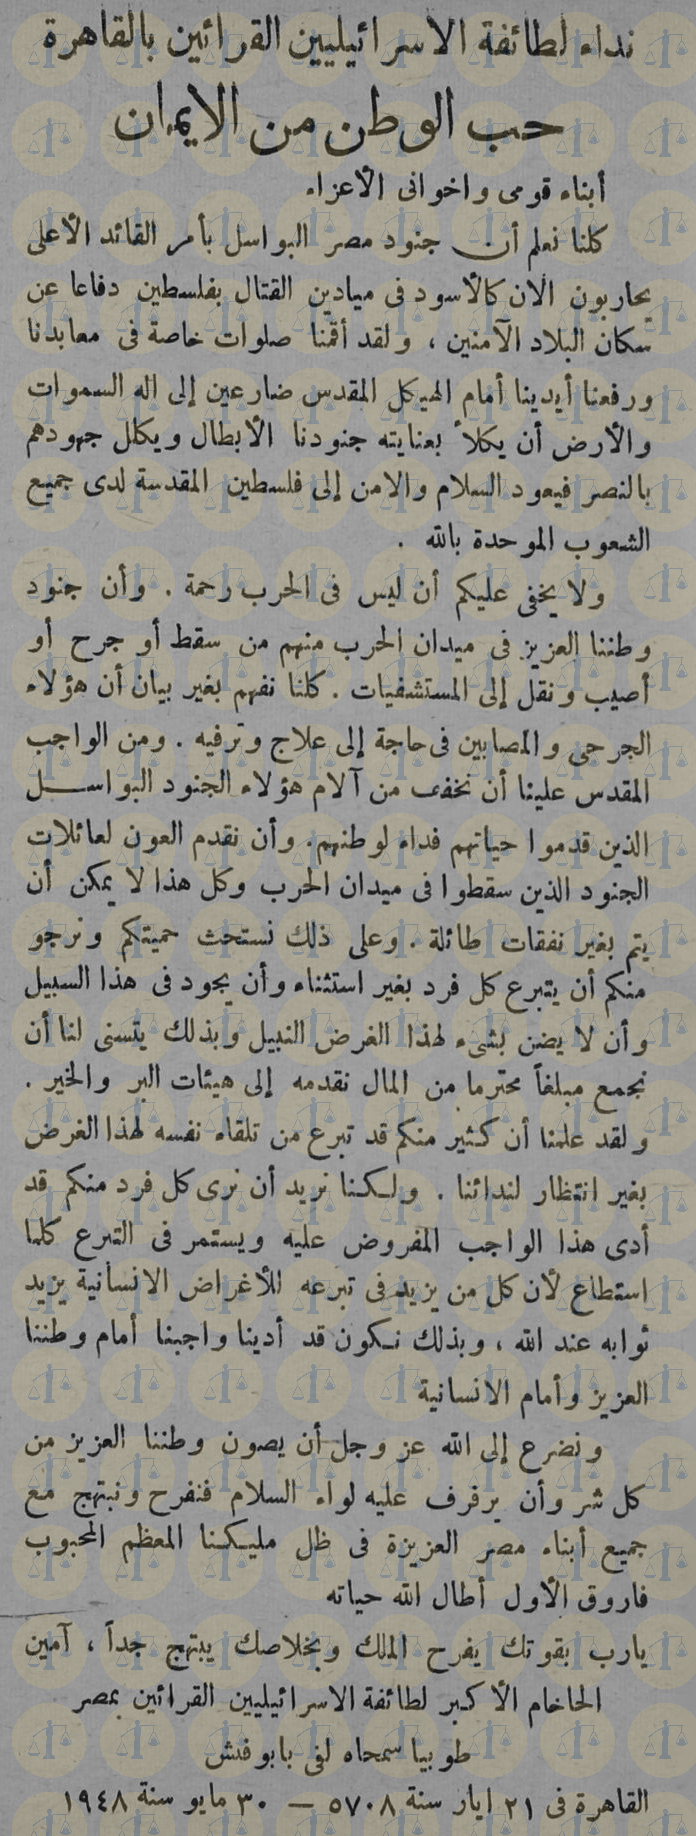 نص بيان حاخام القرائين في مصر يوم 30 مايو 1948 م